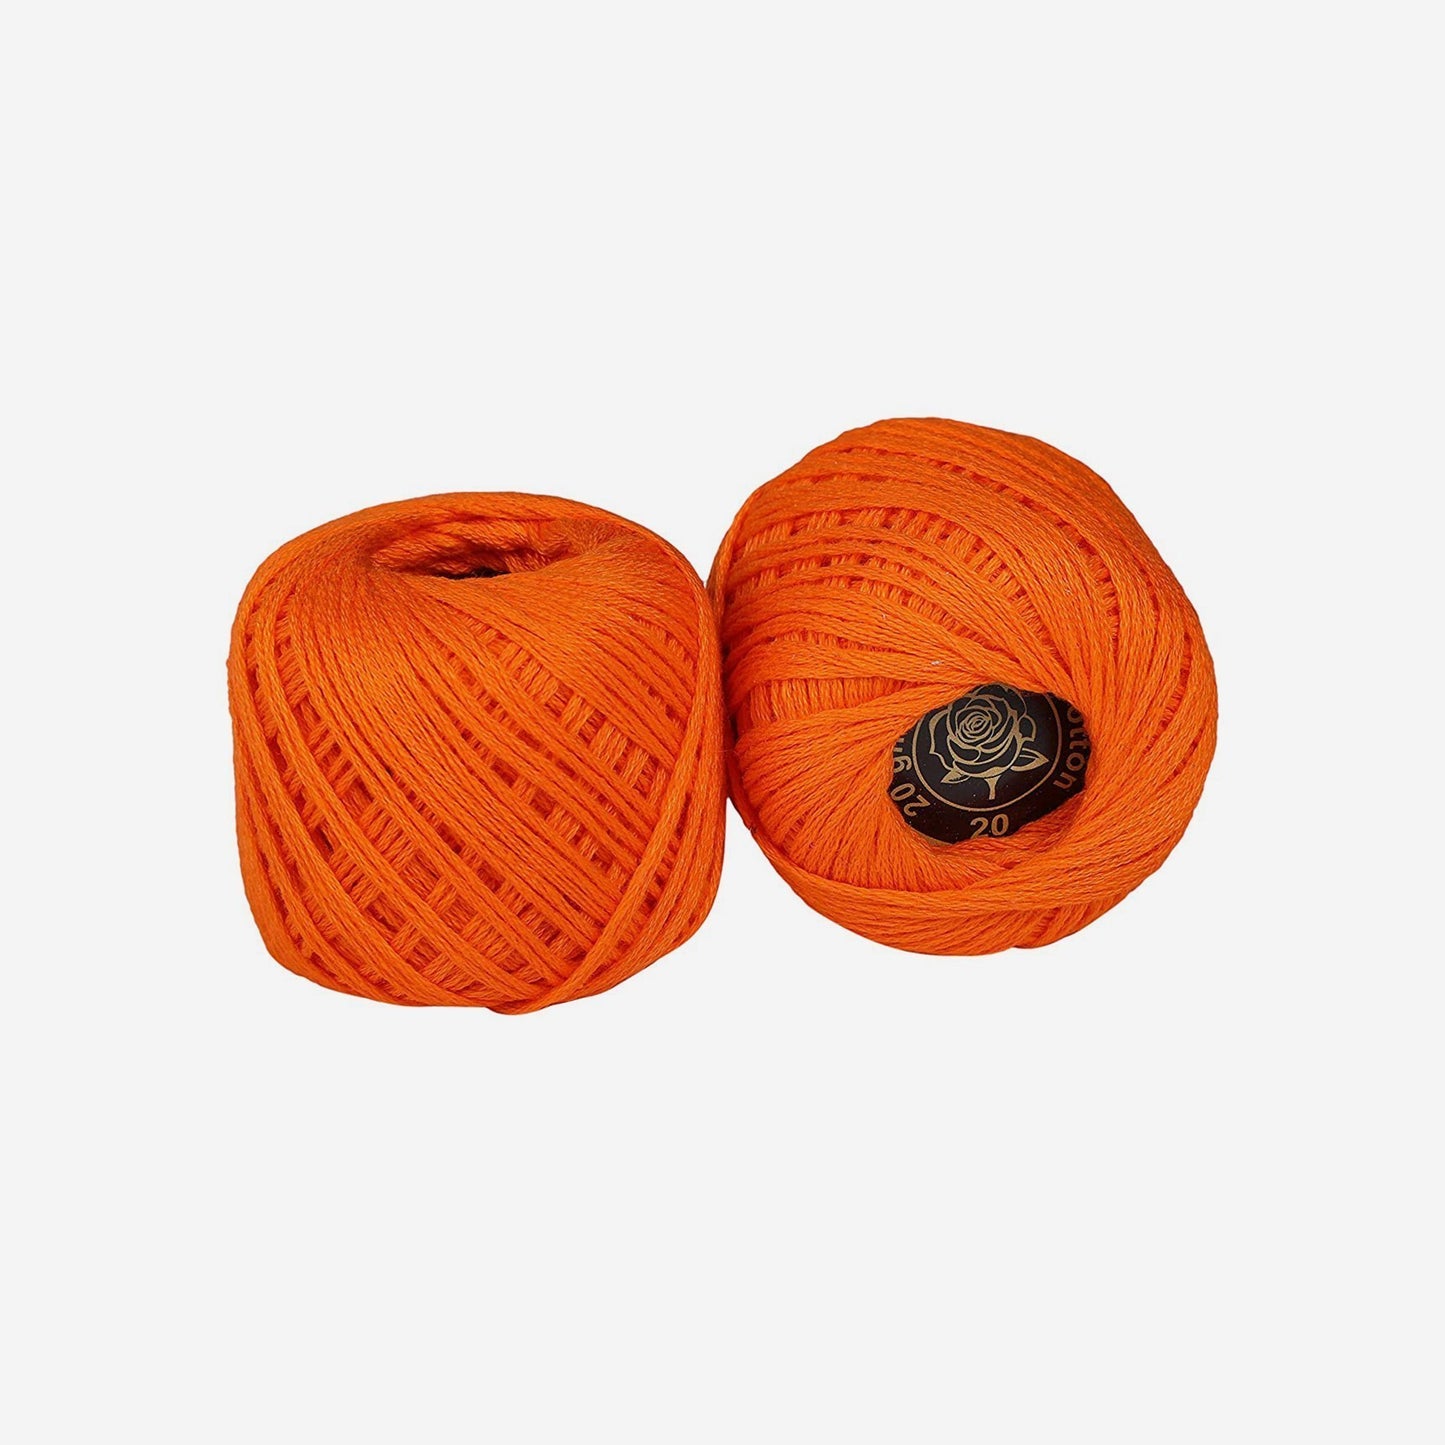 Hand-crochet hoops (Variation 13)